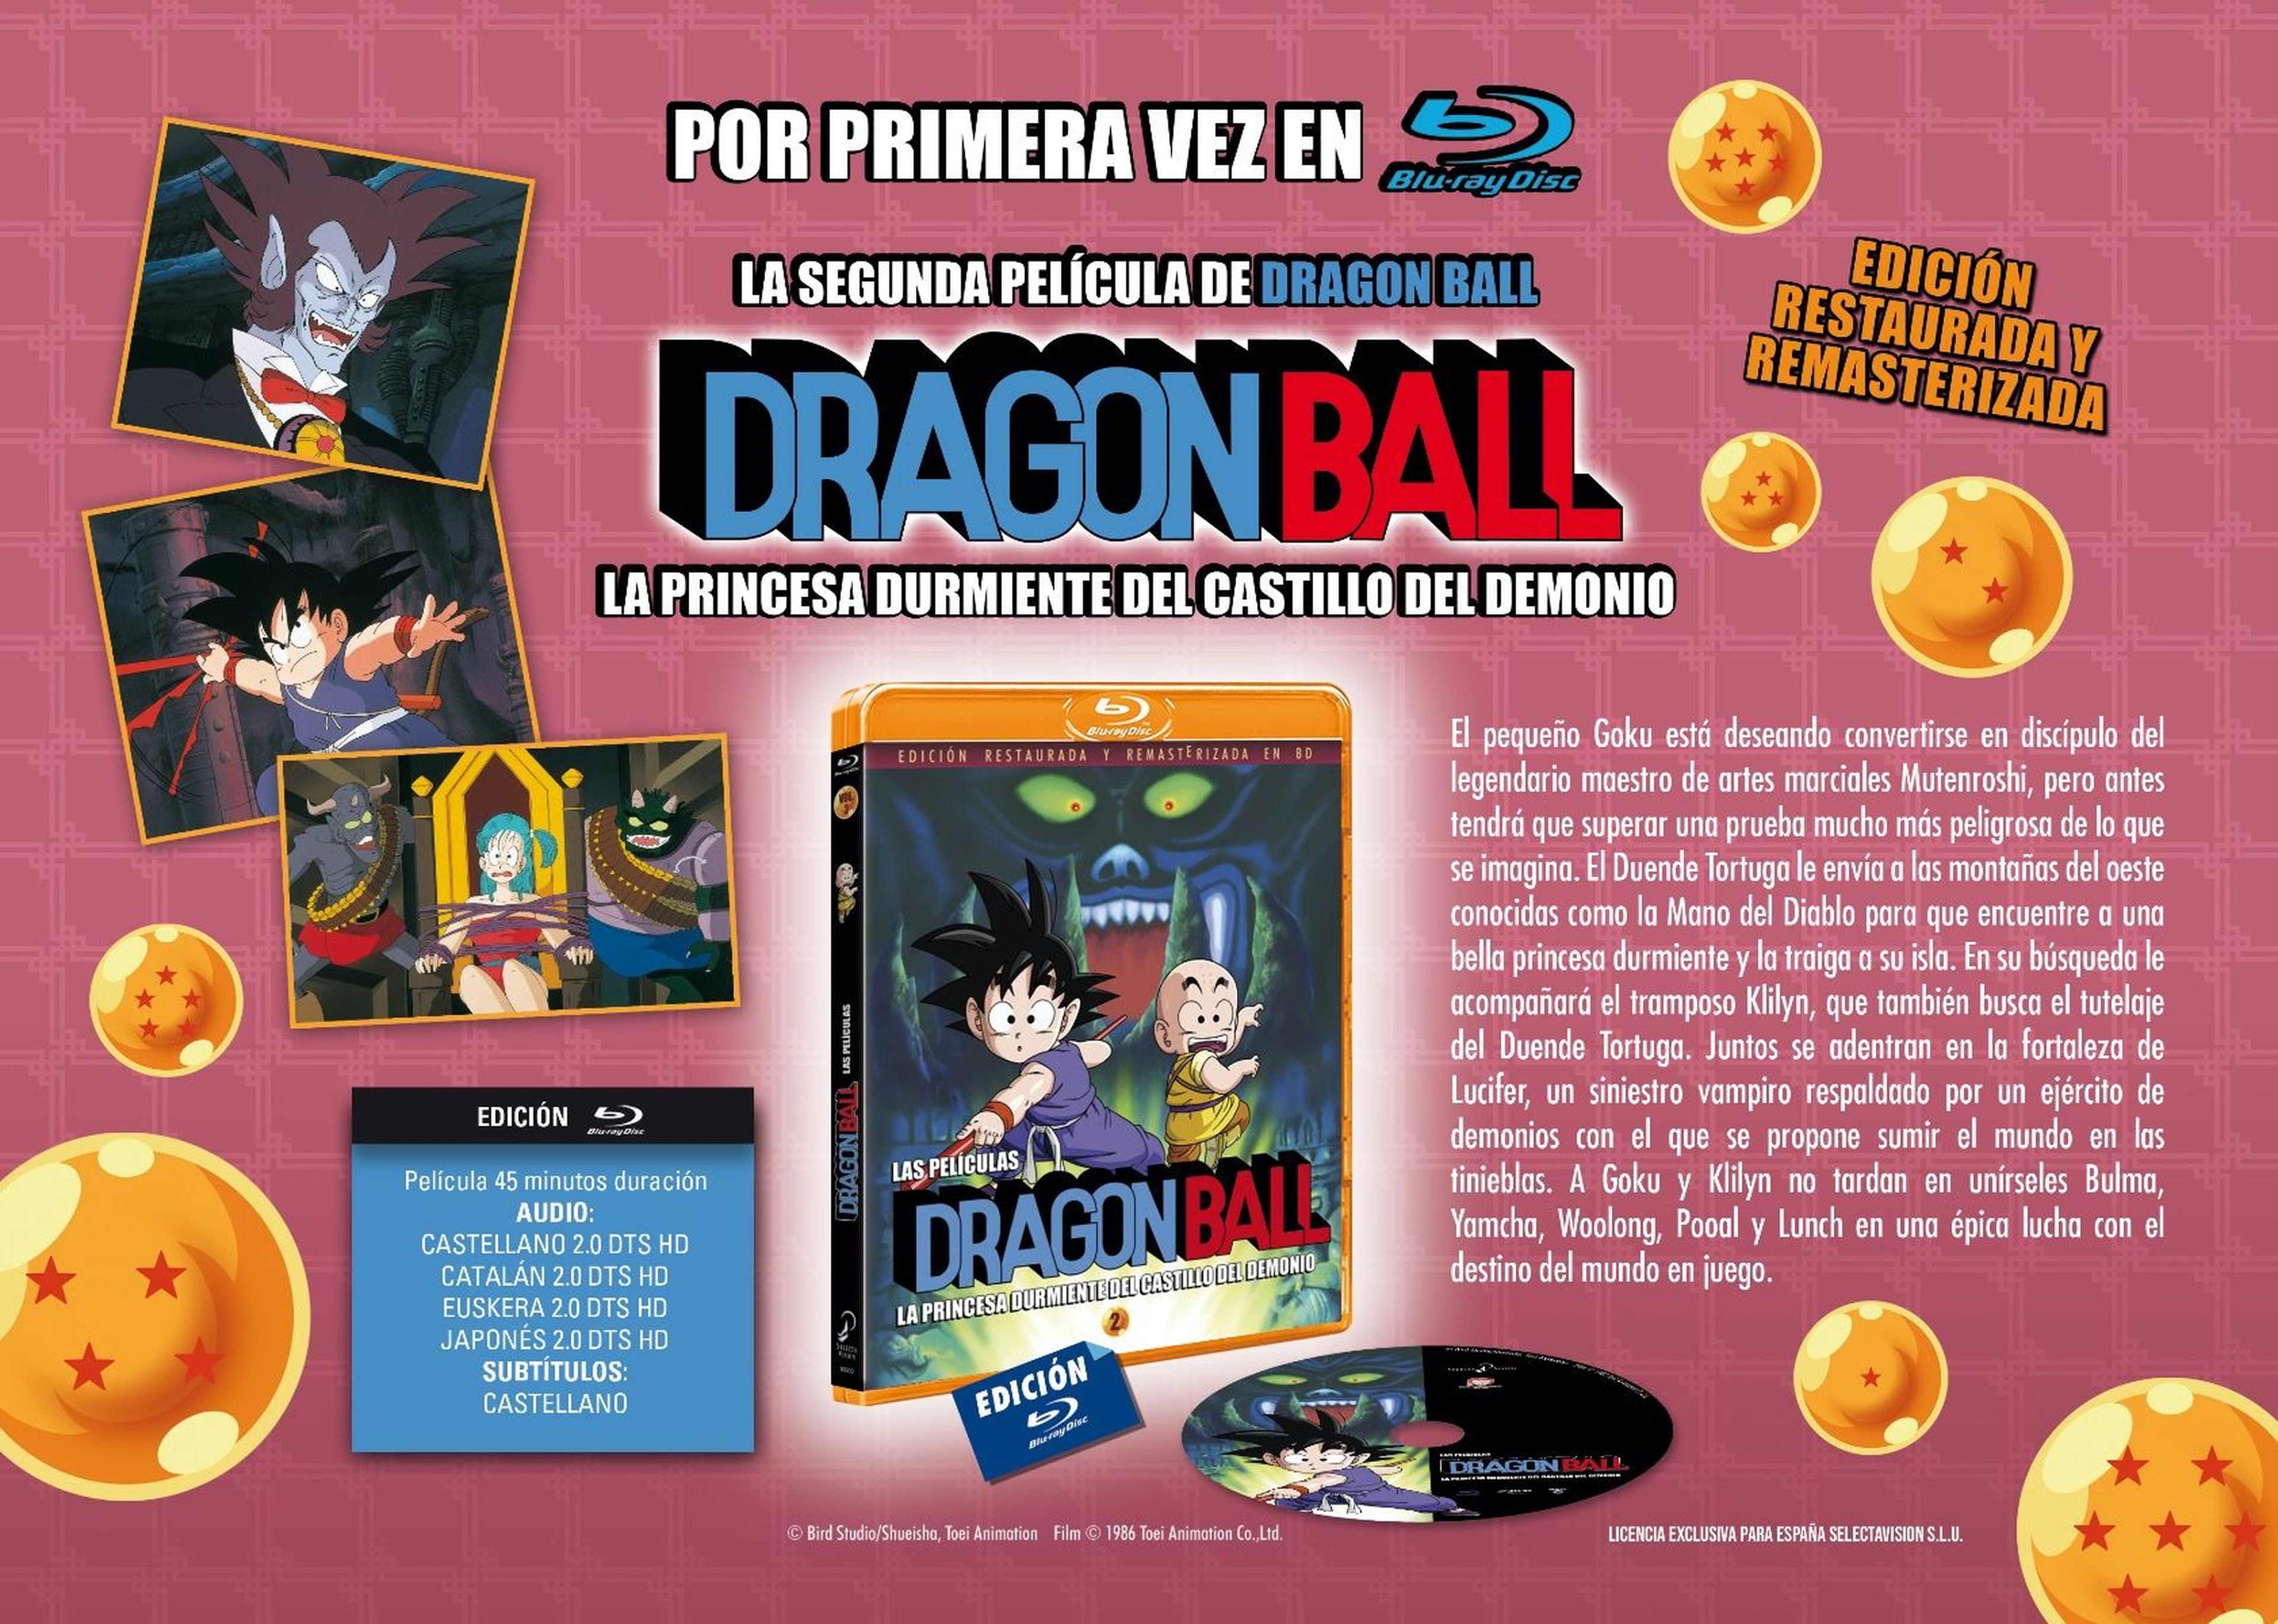 Dragon Ball - Portada y fecha de lanzamiento de la segunda película en Blu-ray